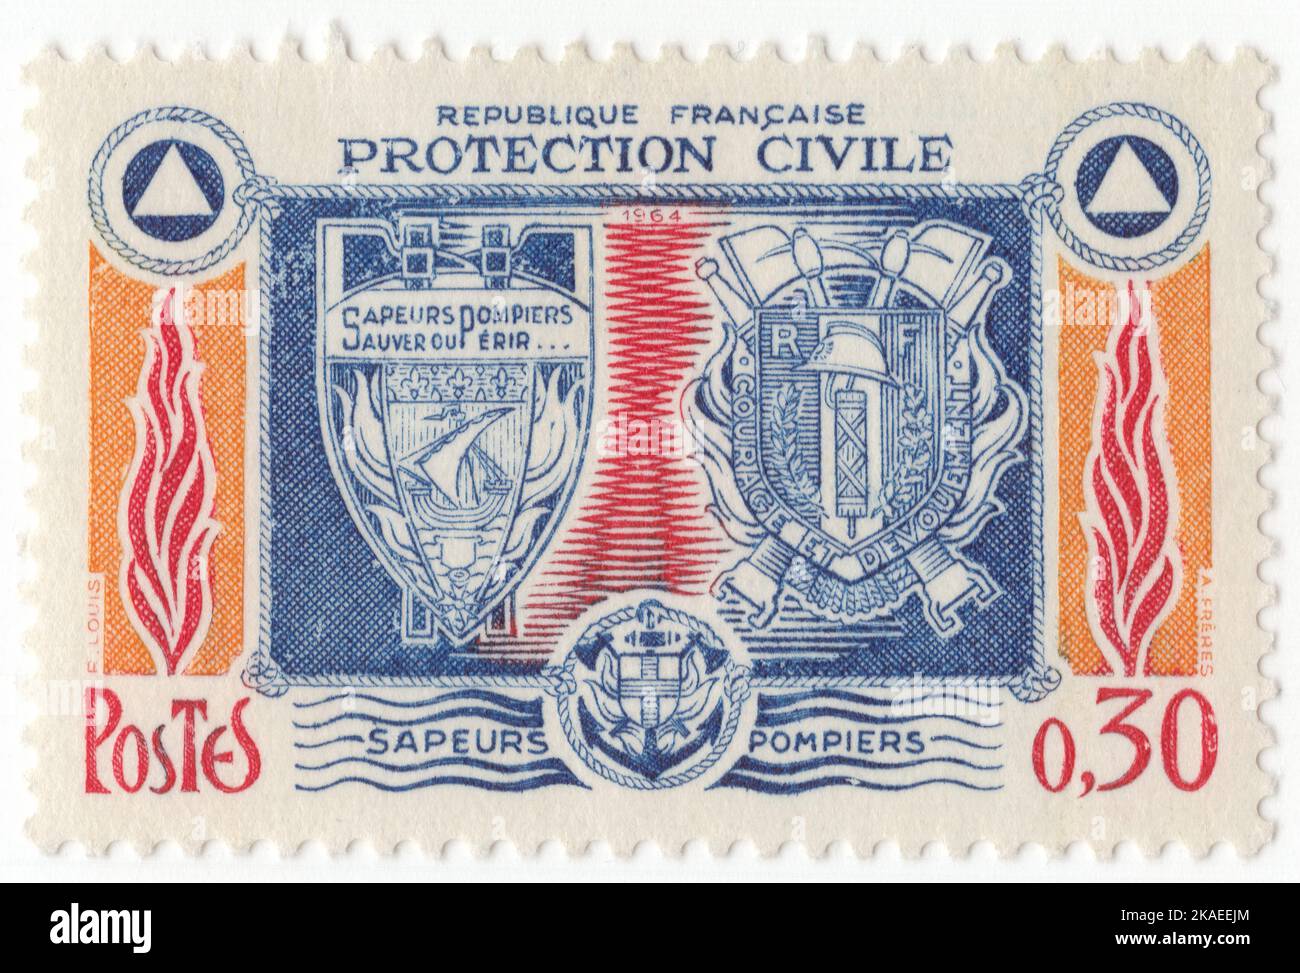 FRANCE - 1964 8 février : timbre-poste bleu, orange et rouge de 30 centimes représentant les insignes de la brigade des pompiers, les symboles du feu, de l'eau et de la défense civile. Délivré en l'honneur des brigades de pompiers et du corps civil de défense Banque D'Images